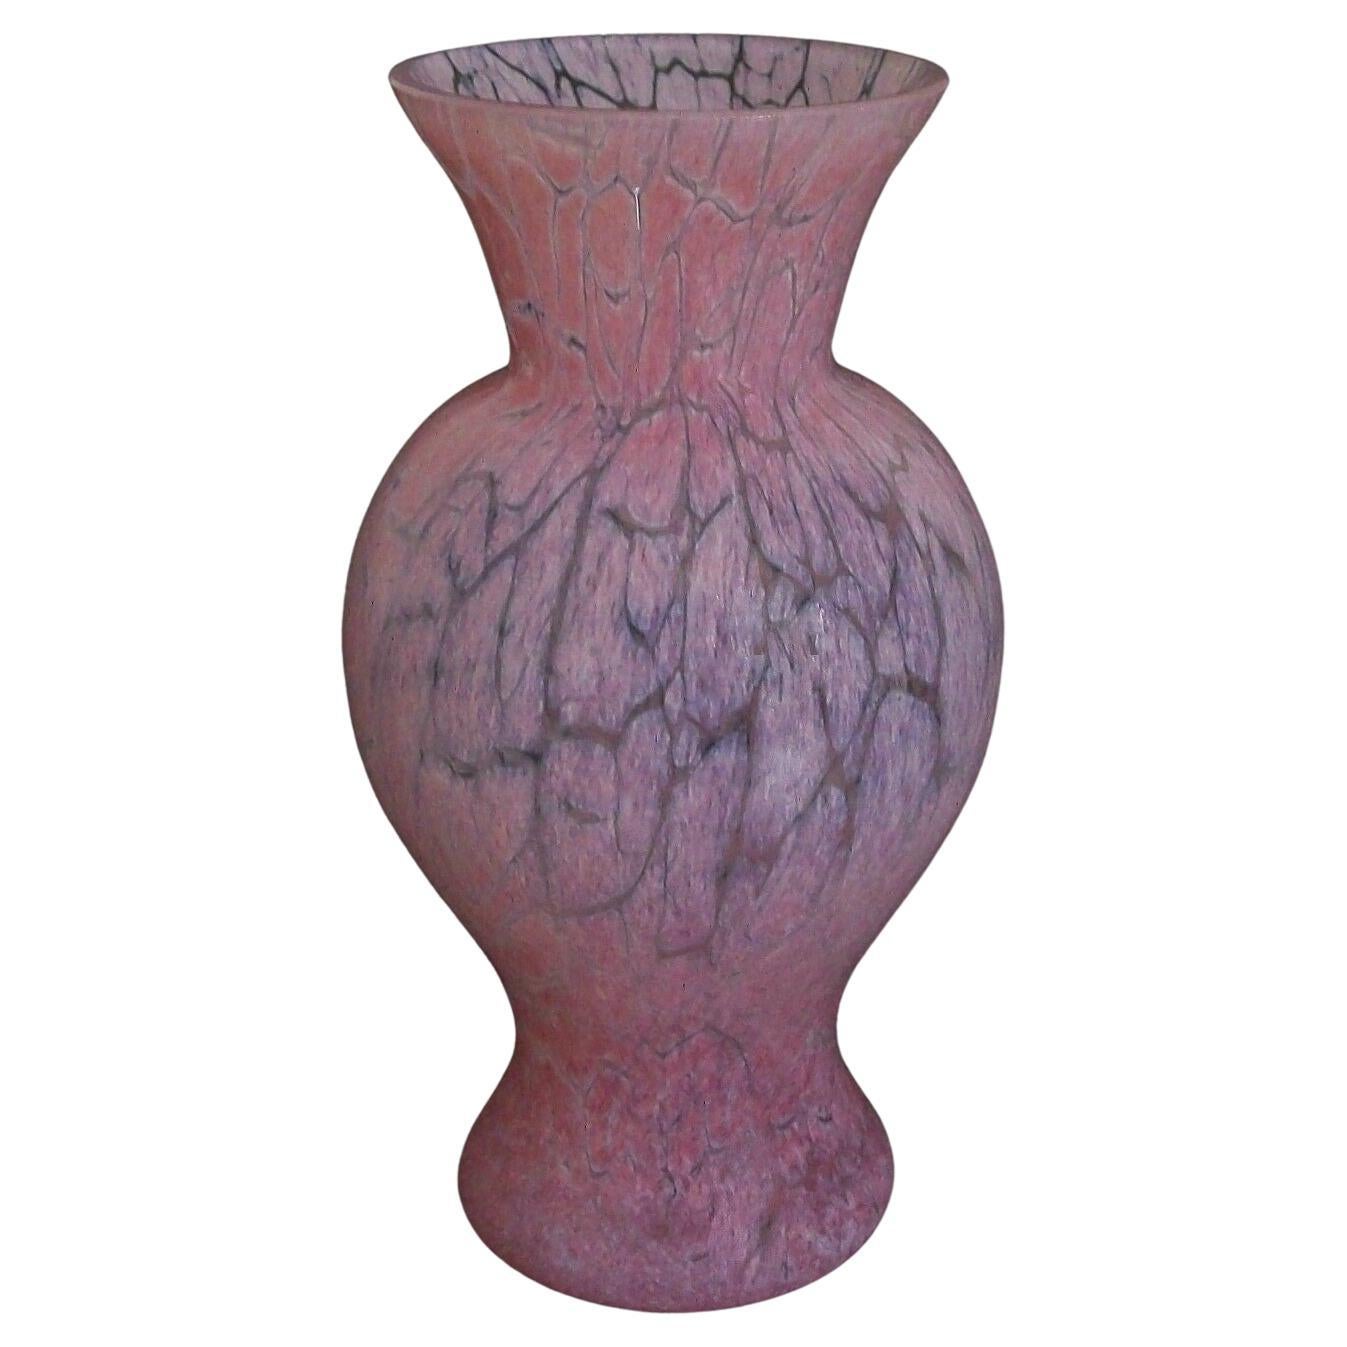 KOSTA BODA  Ulrica Hydman-Vallien - Vase en verre craquelé - Suède - 20e siècle